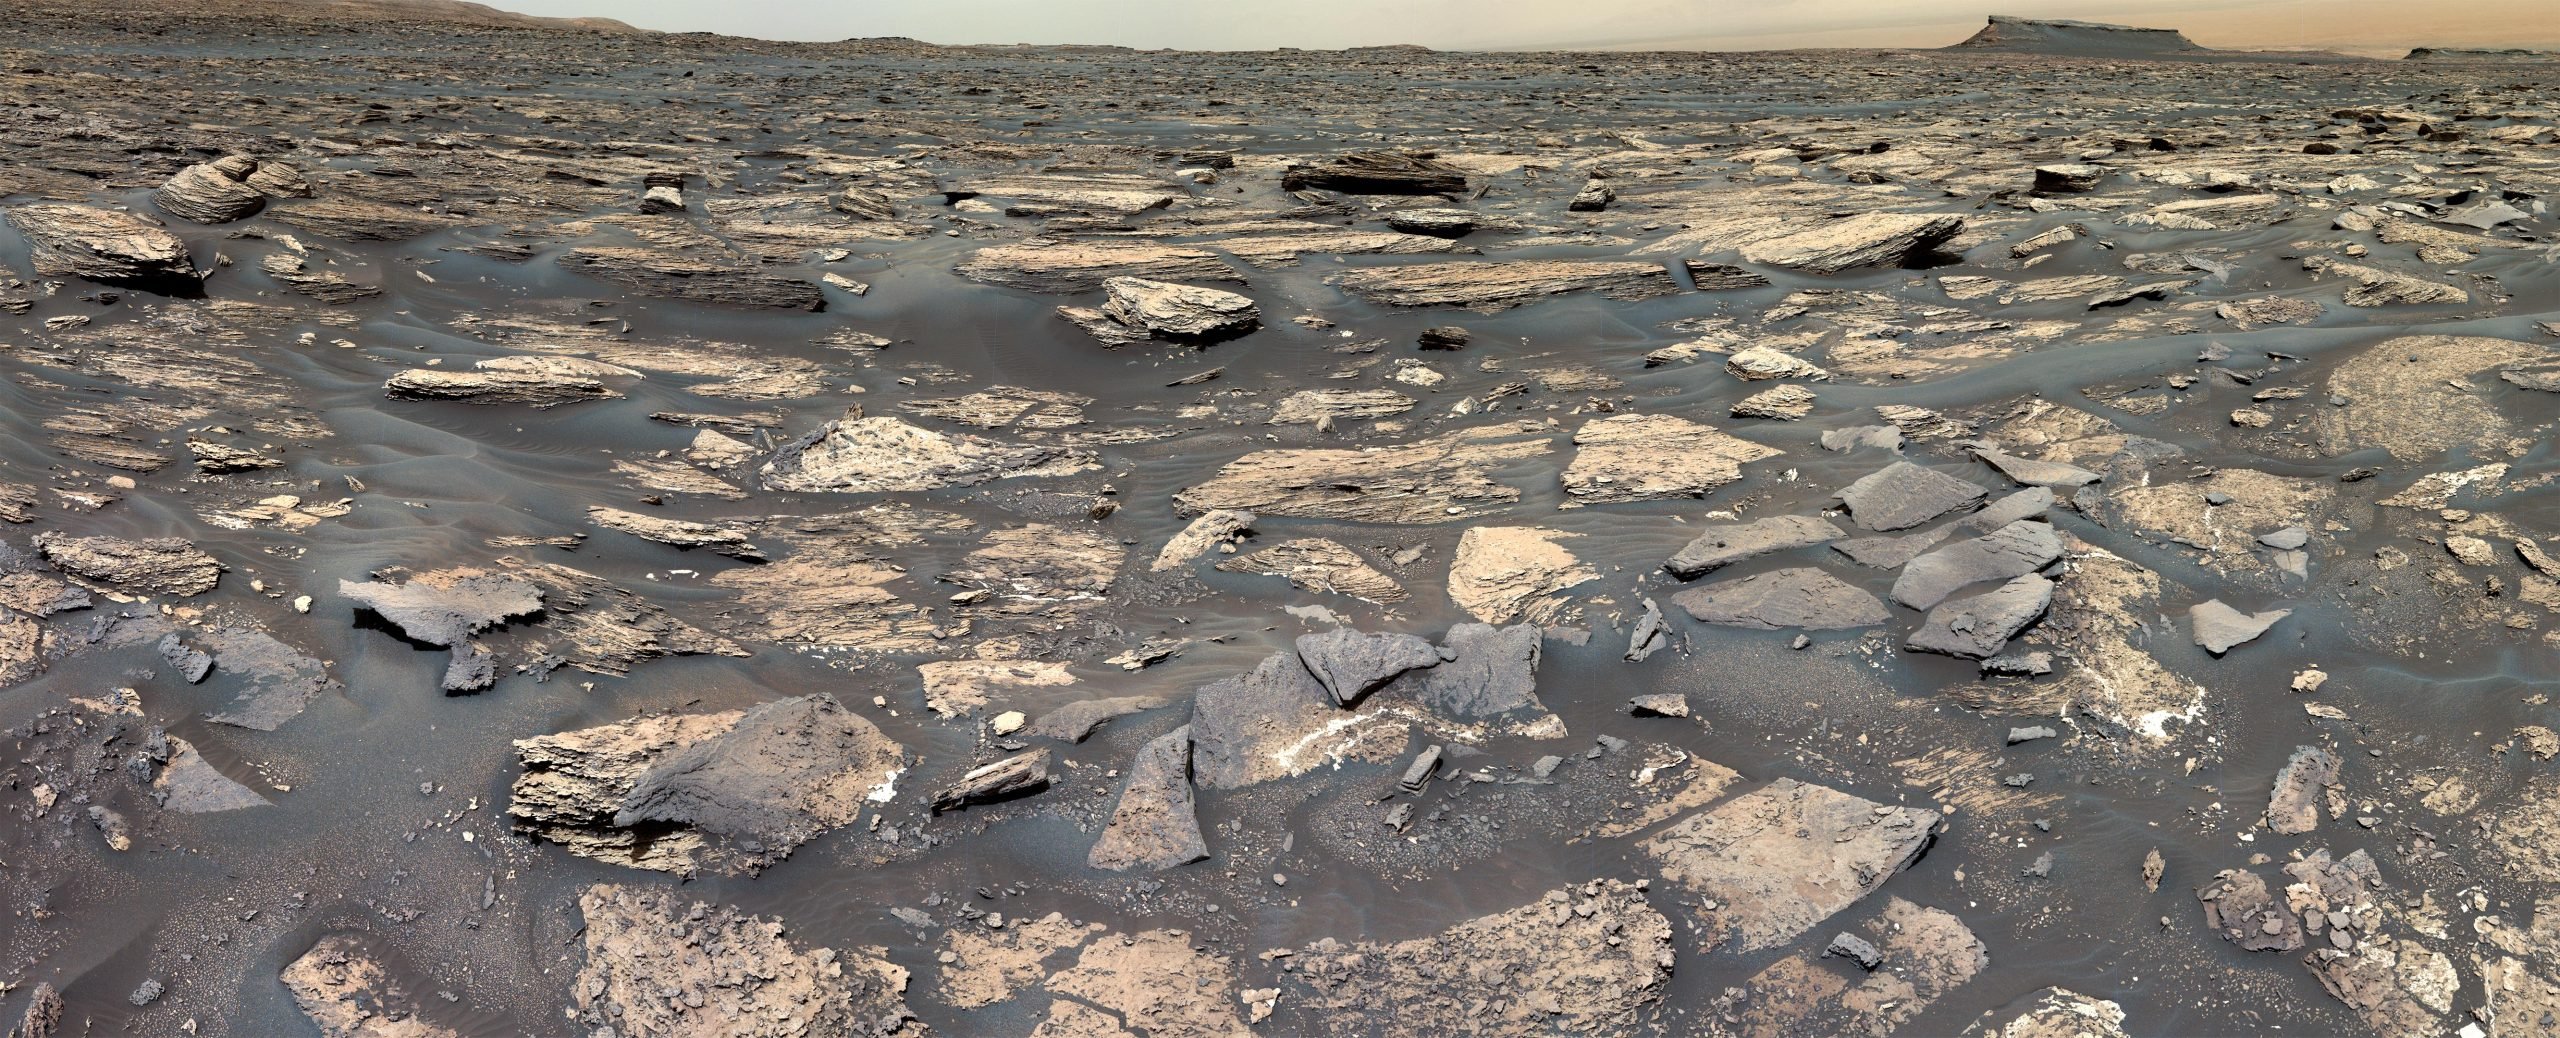 NASA의 큐리오시티 로버가 고대 화성에서 지구와 유사한 환경의 징후를 감지했습니다.